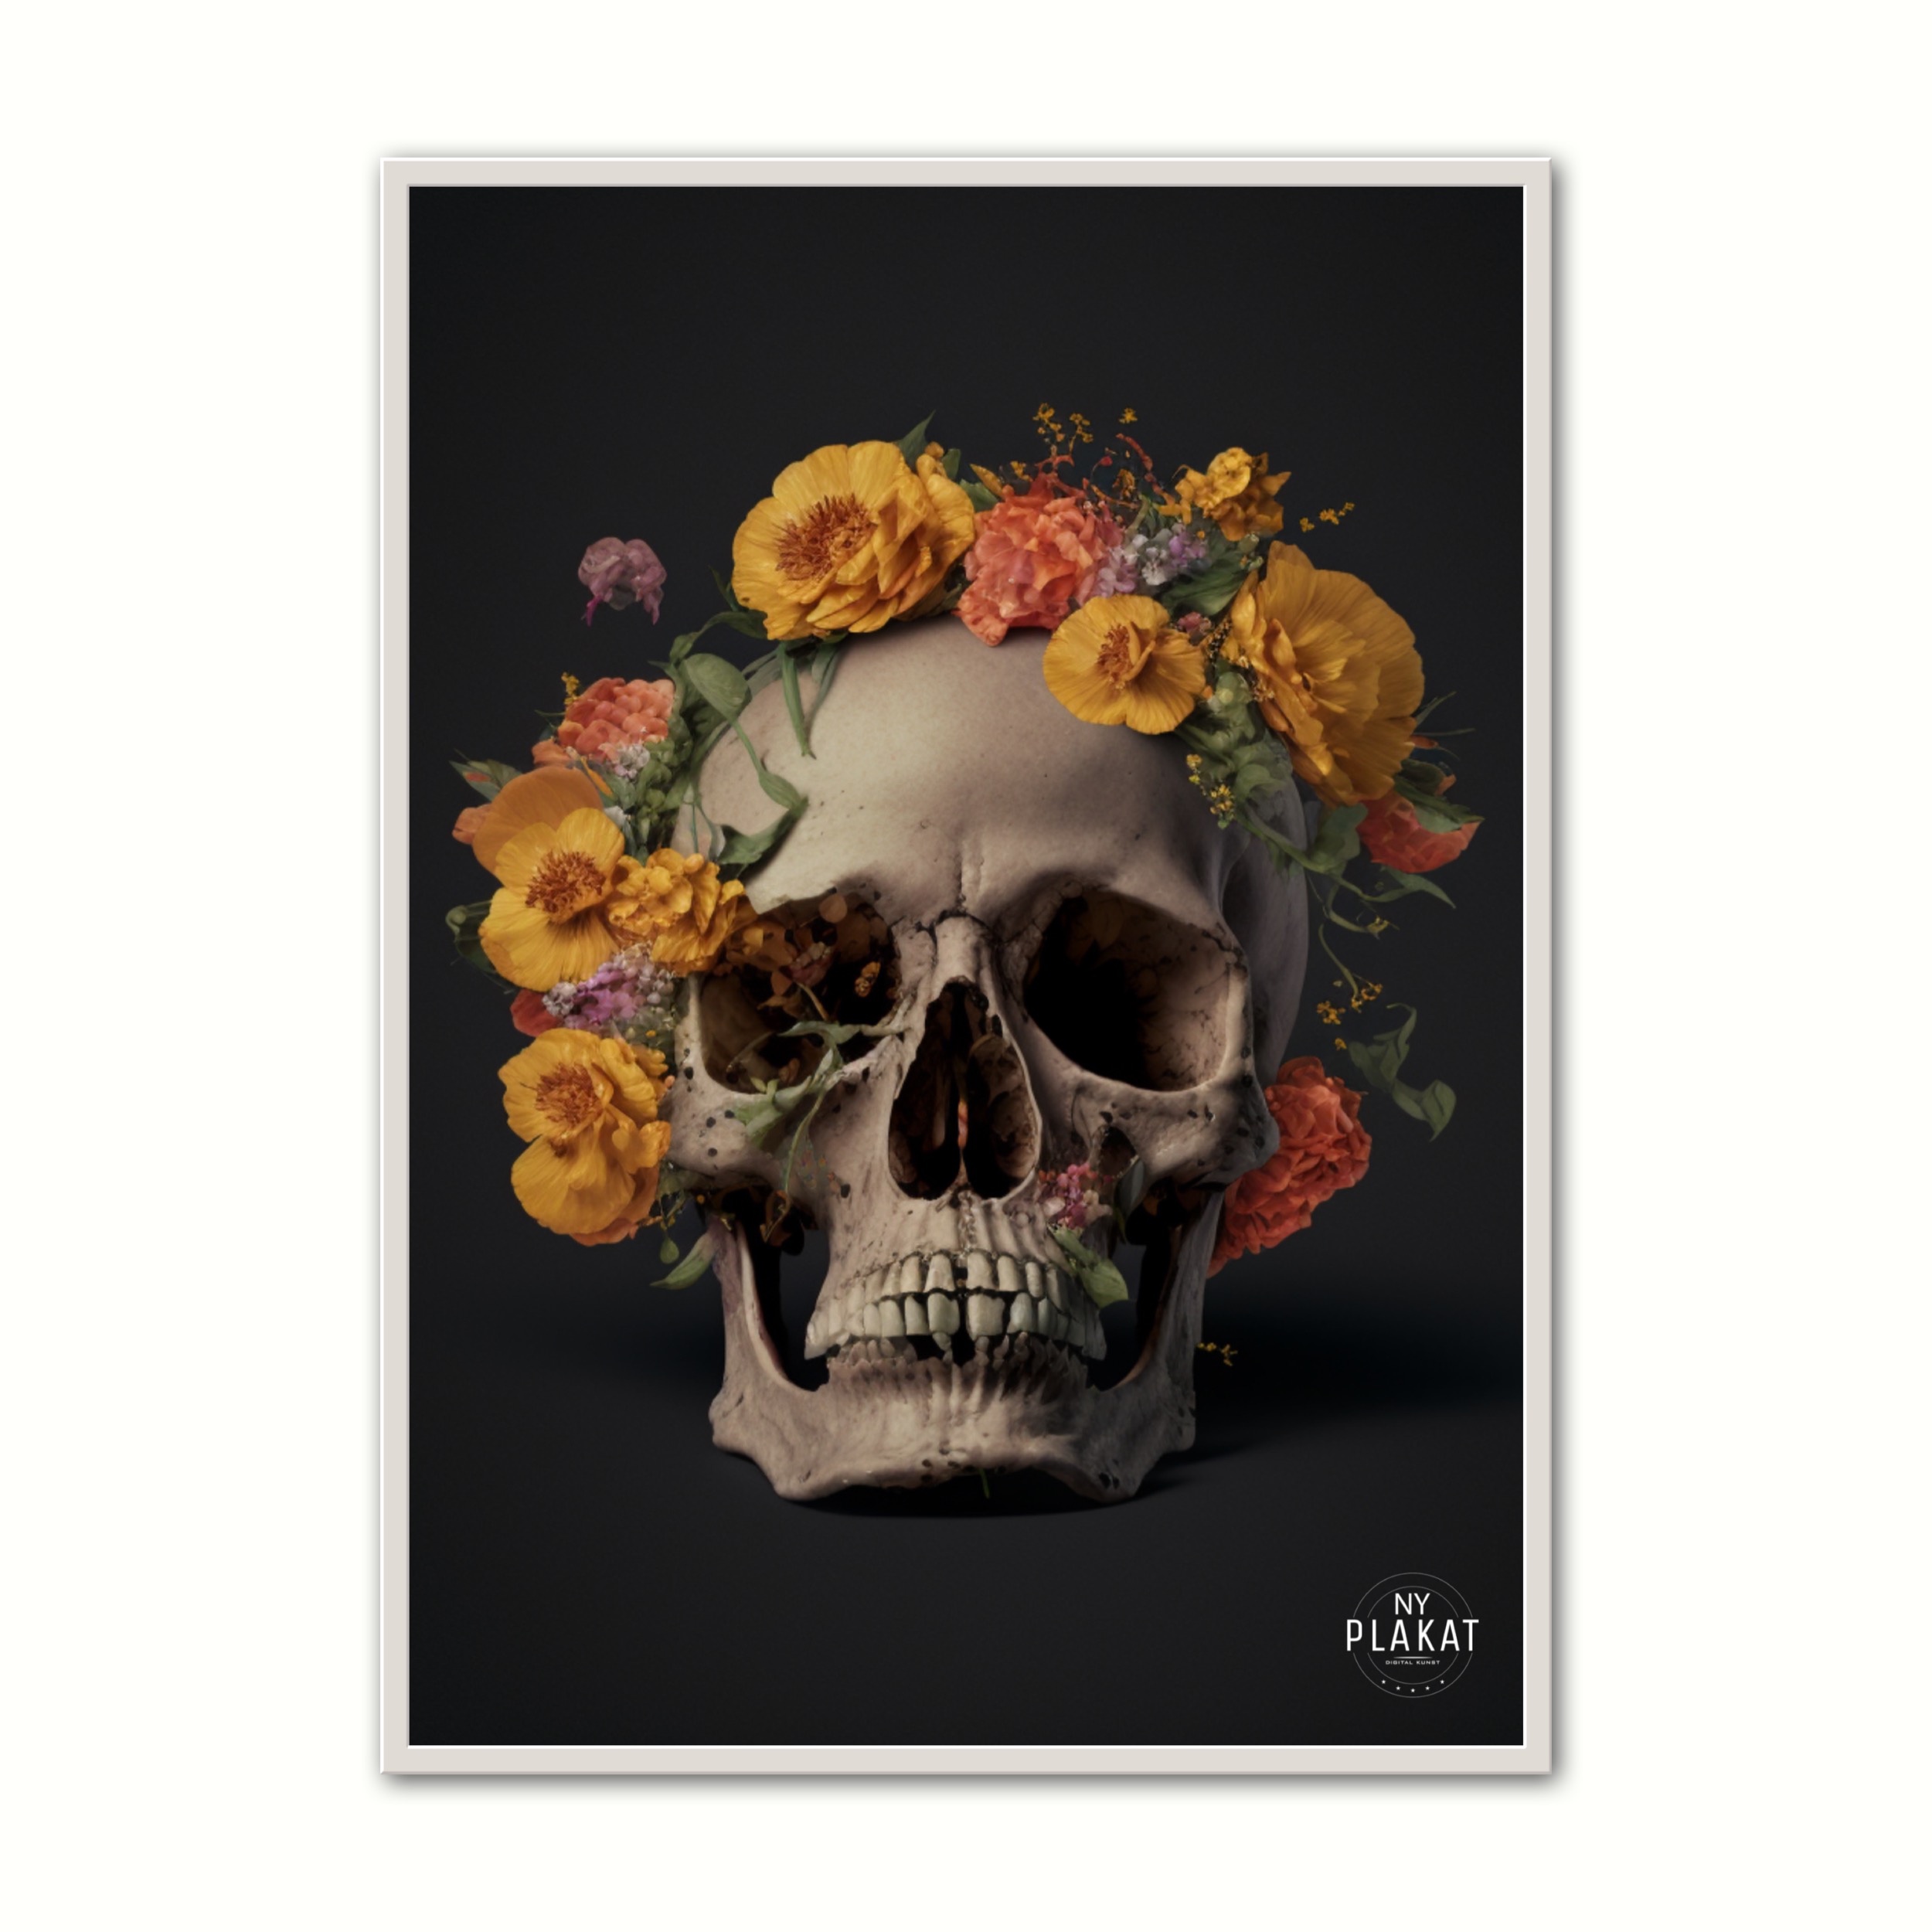 Billede af Plakat med Skull With Flowers No. 1 21 x 29,7 cm (A4)